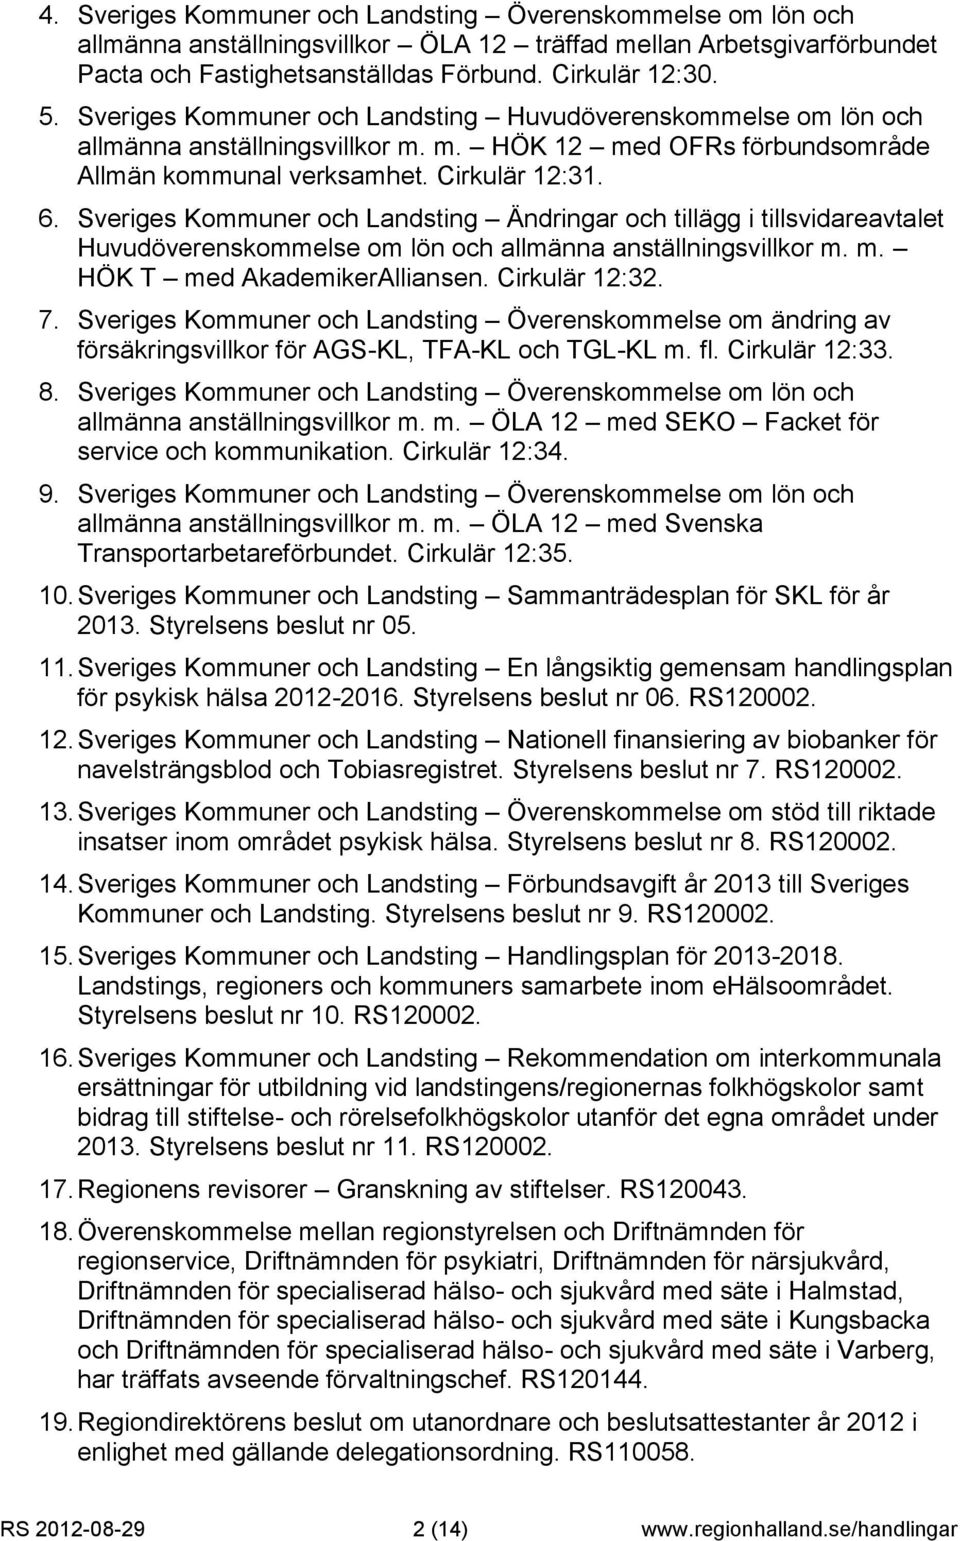 Sveriges Kommuner och Landsting Ändringar och tillägg i tillsvidareavtalet Huvudöverenskommelse om lön och allmänna anställningsvillkor m. m. HÖK T med AkademikerAlliansen. Cirkulär 12:32. 7.